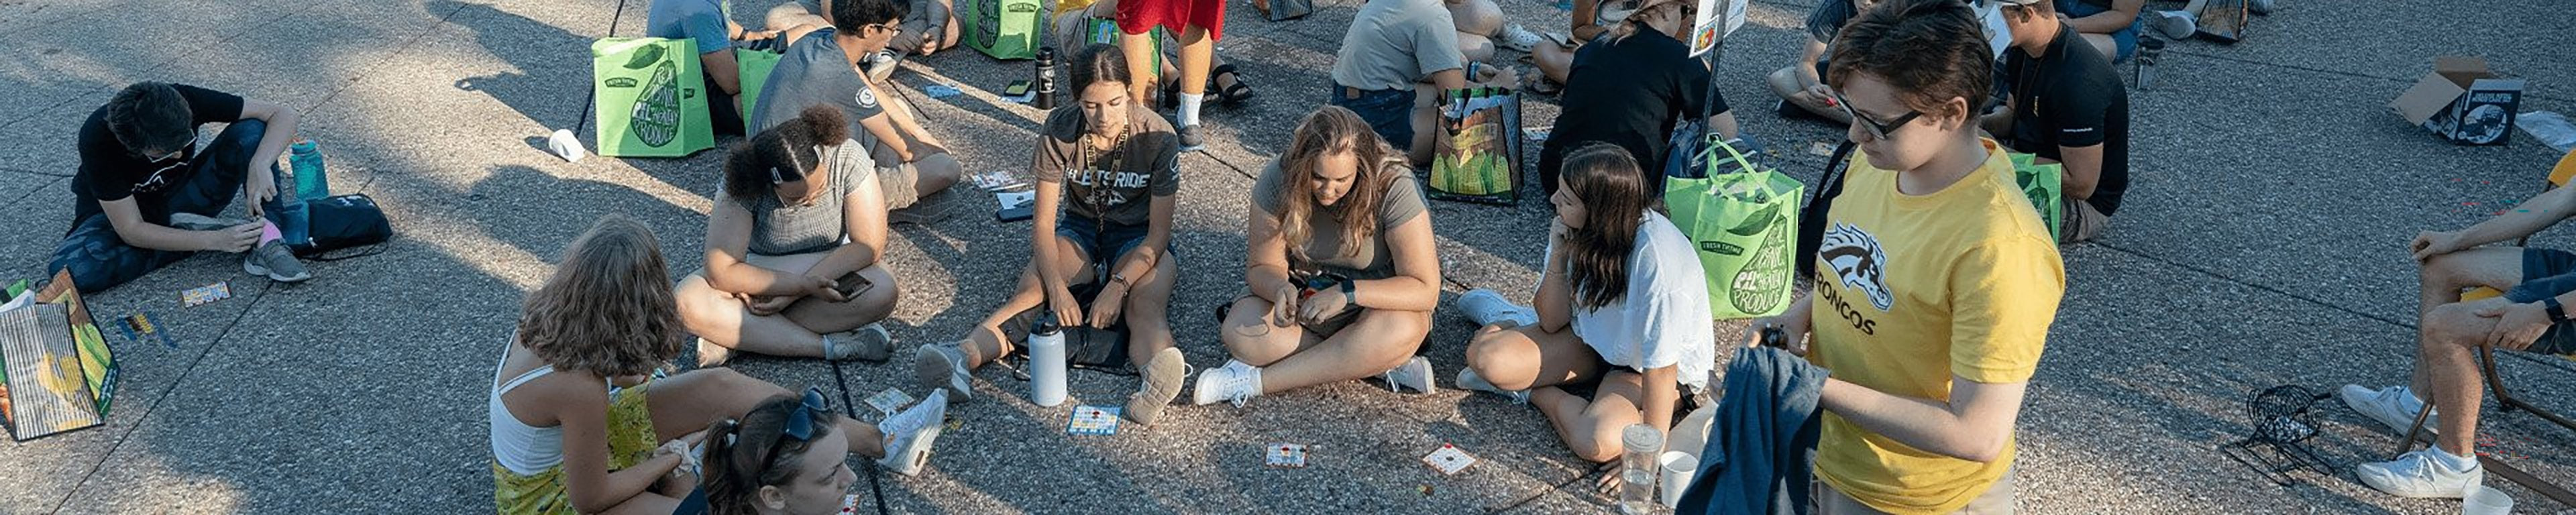 Students playing bingo outdoors